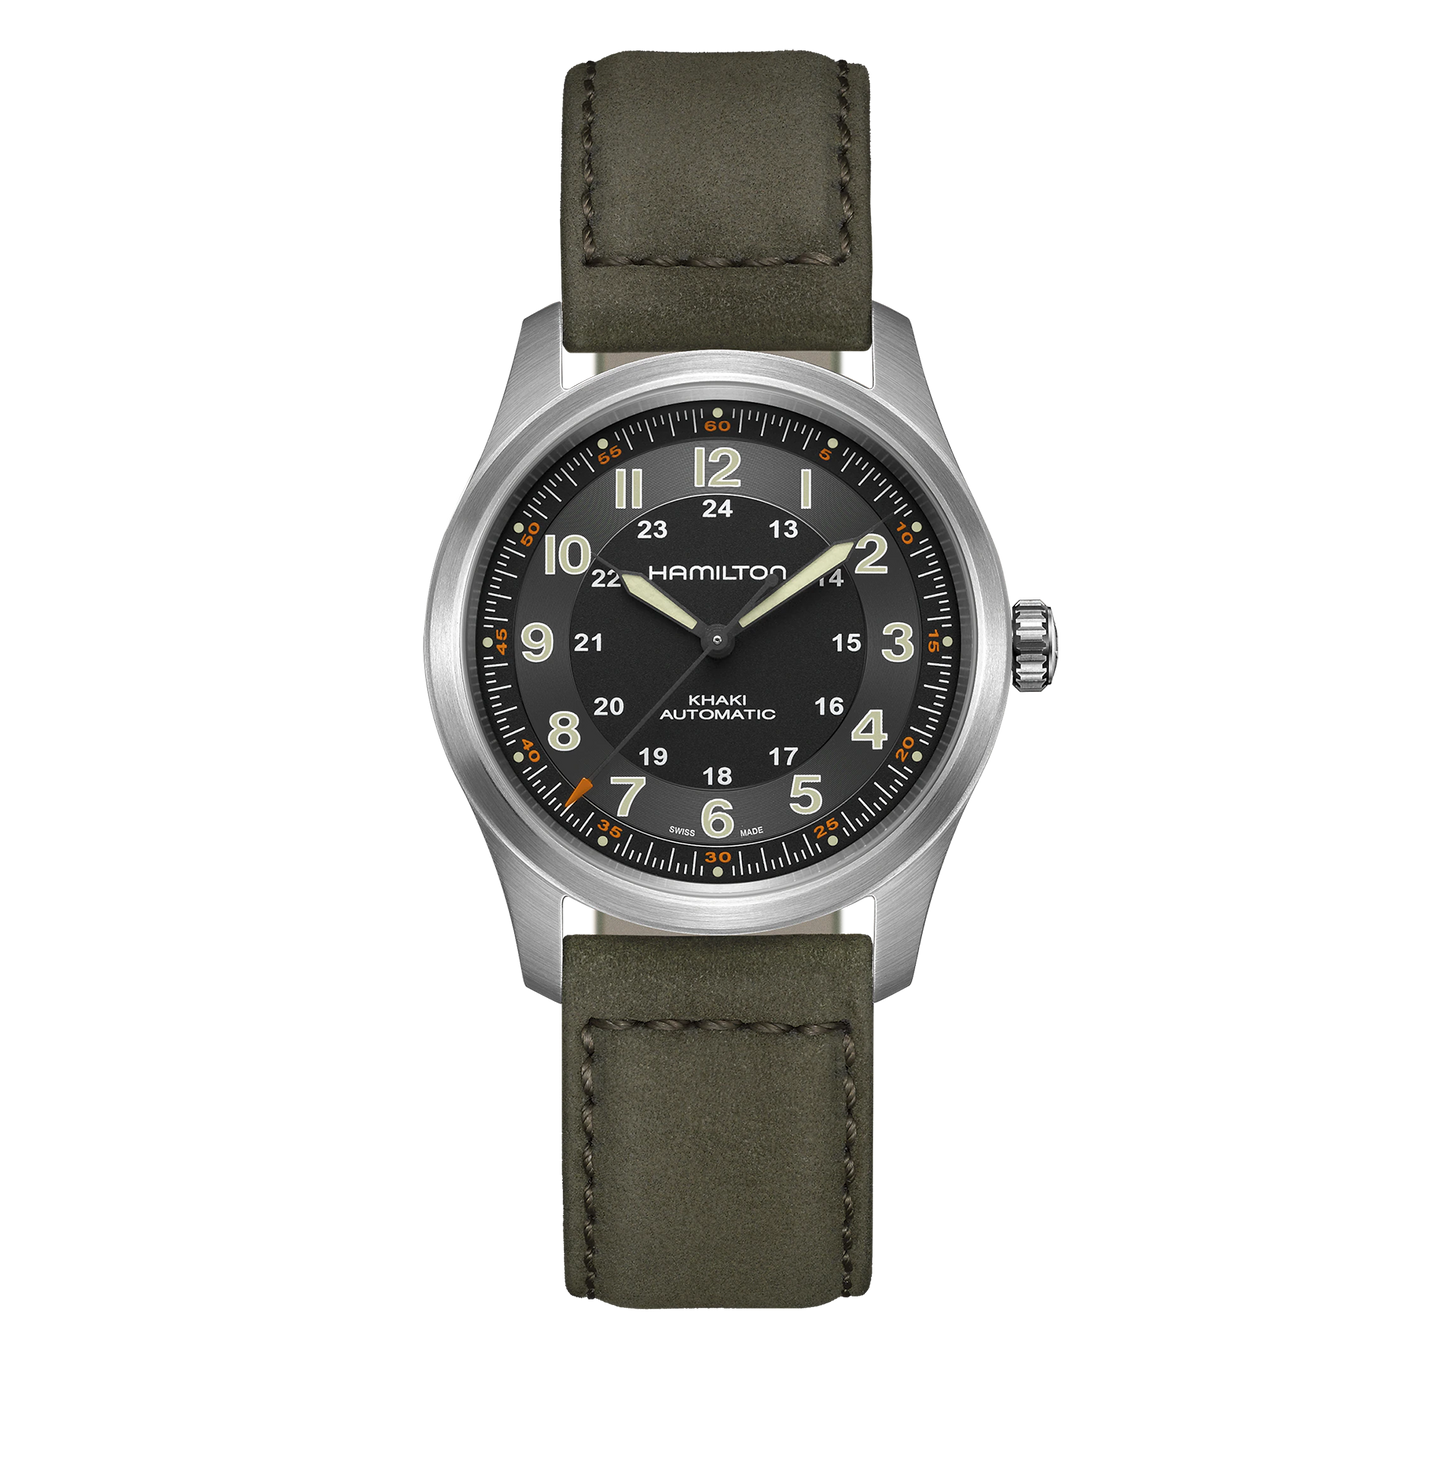 Hamilton Khaki Field Titanium Auto Watch with Leather Strap